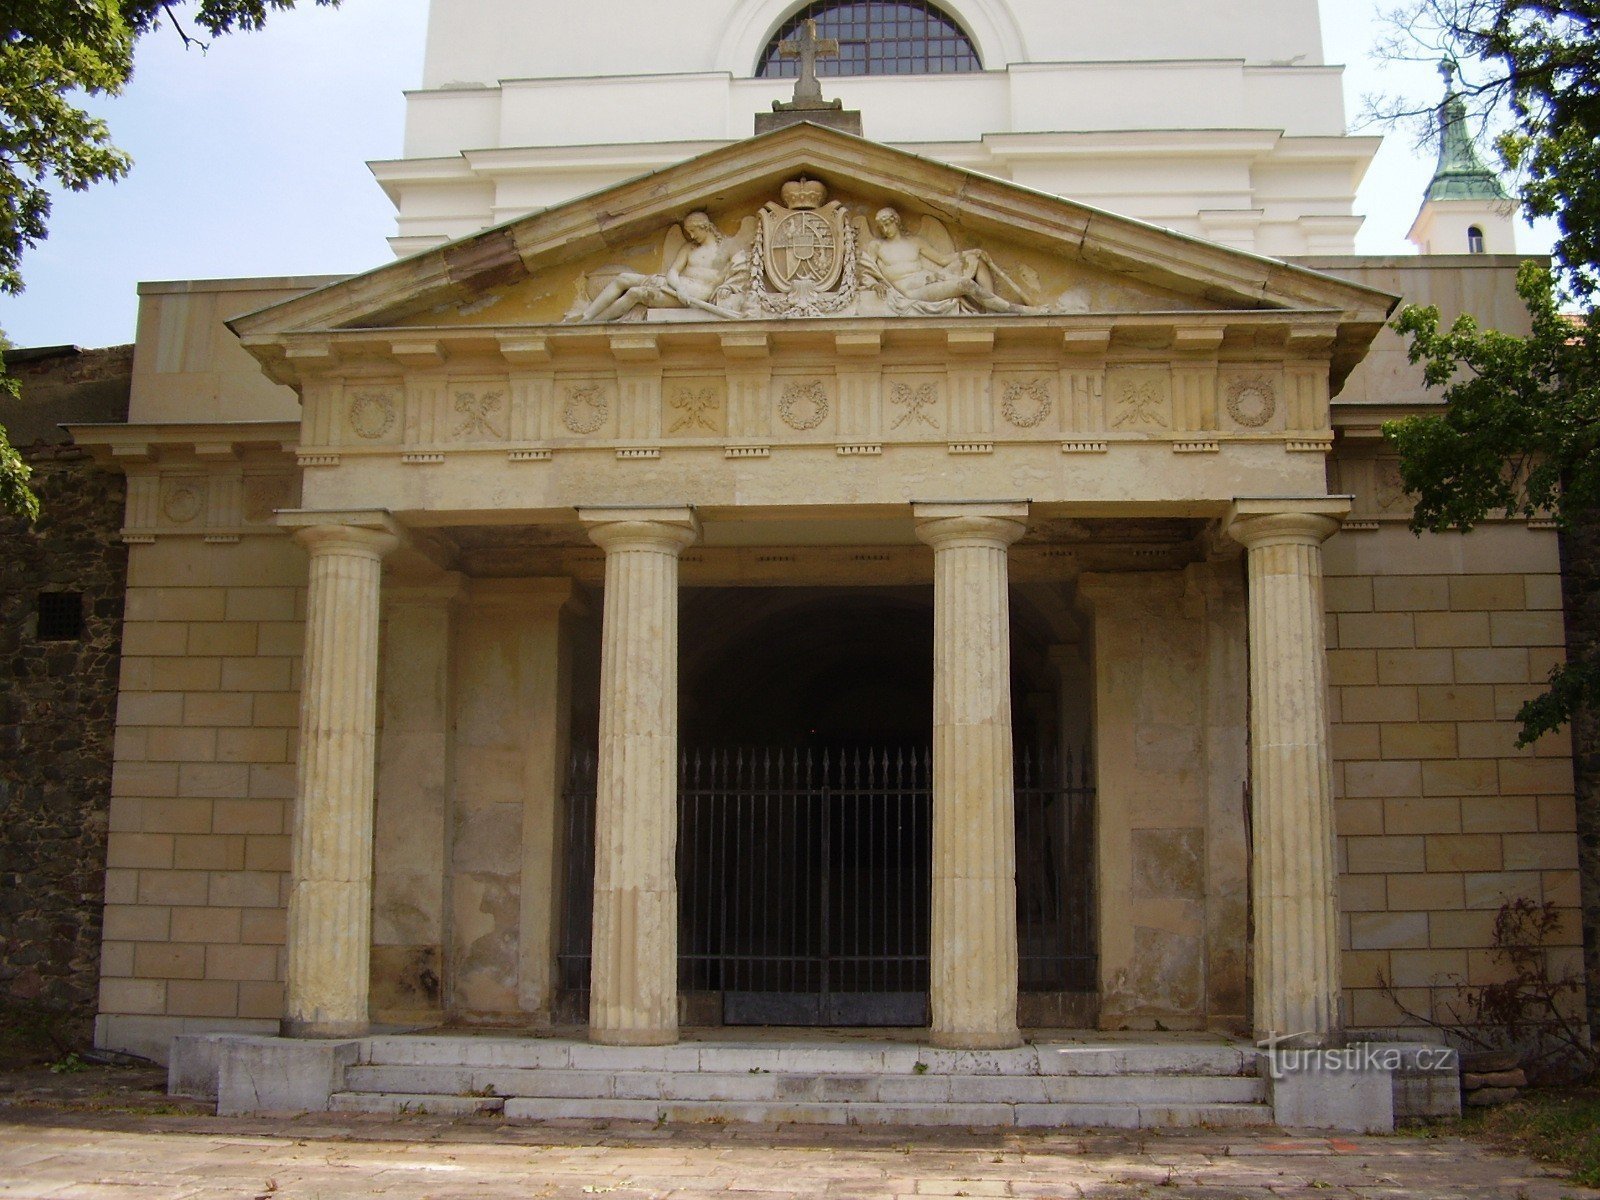 Liechtenstein tomb in Vranov near Brno